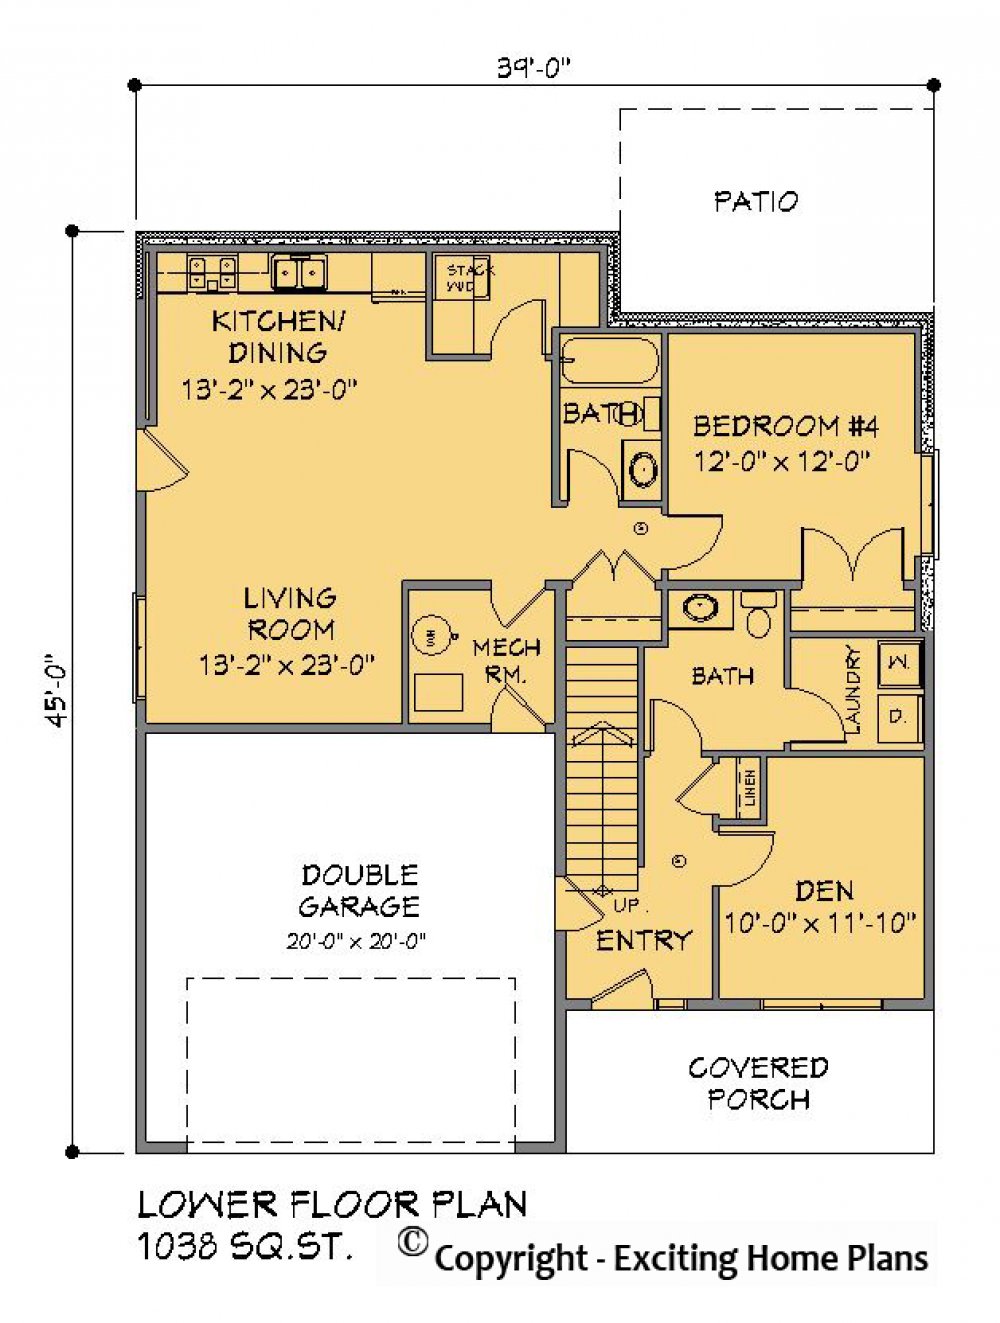 House Plan E1621-10 Lower Floor Plan